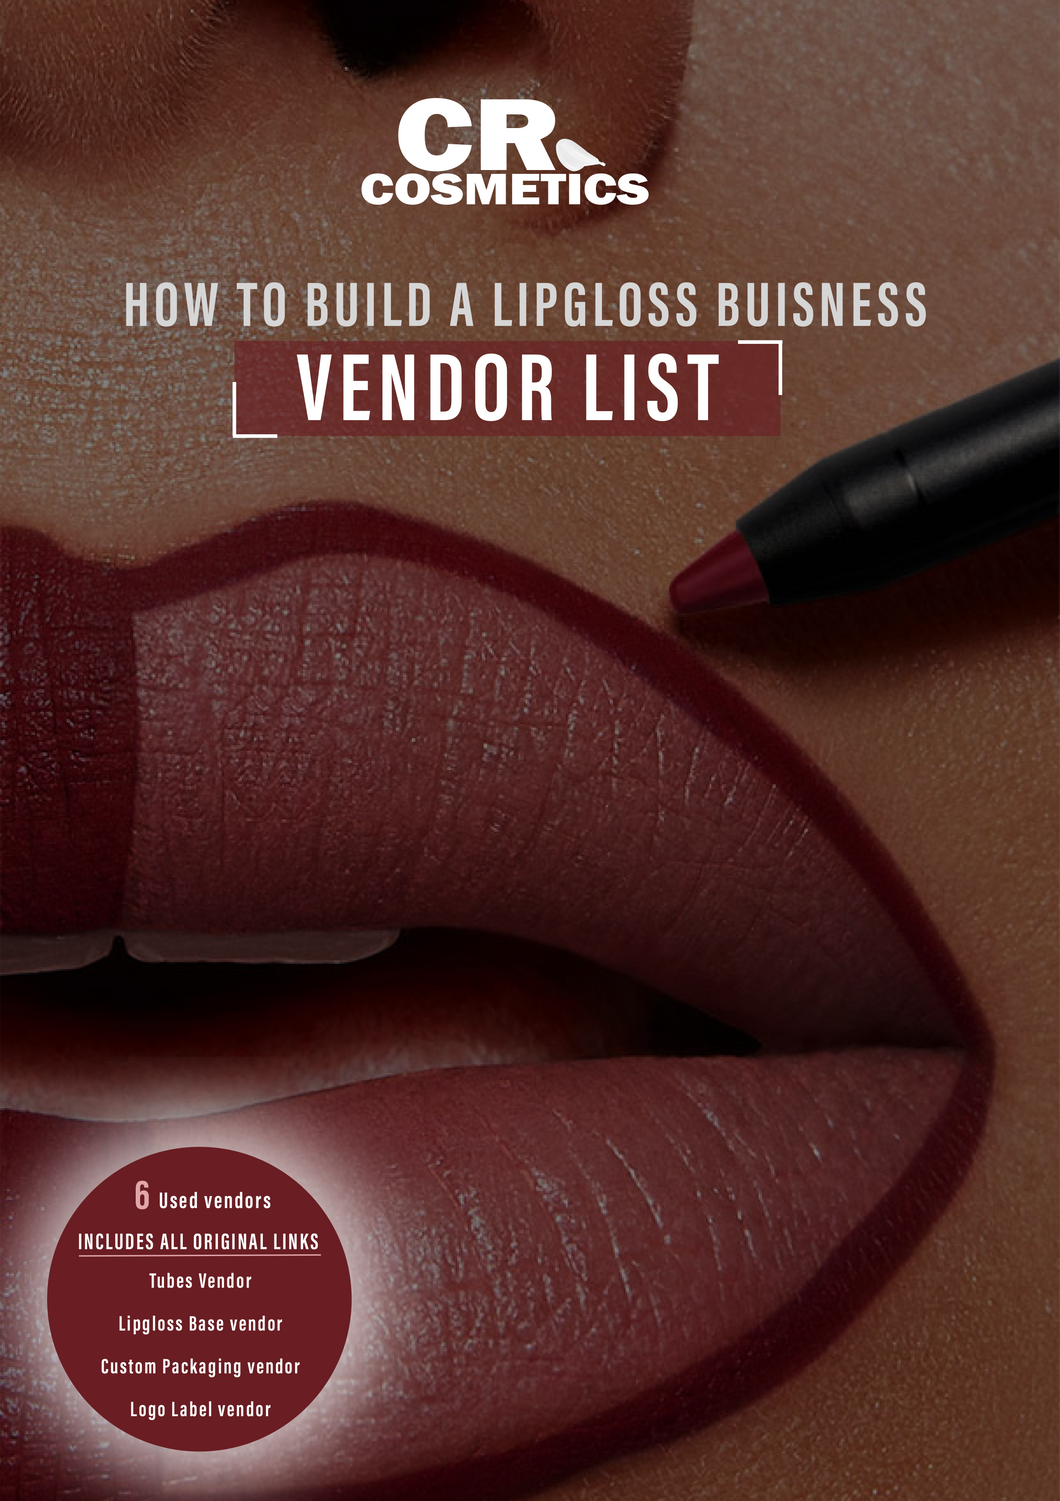 Vendor List | HOW TO BUILD A LIPGLOSS BUISNESS